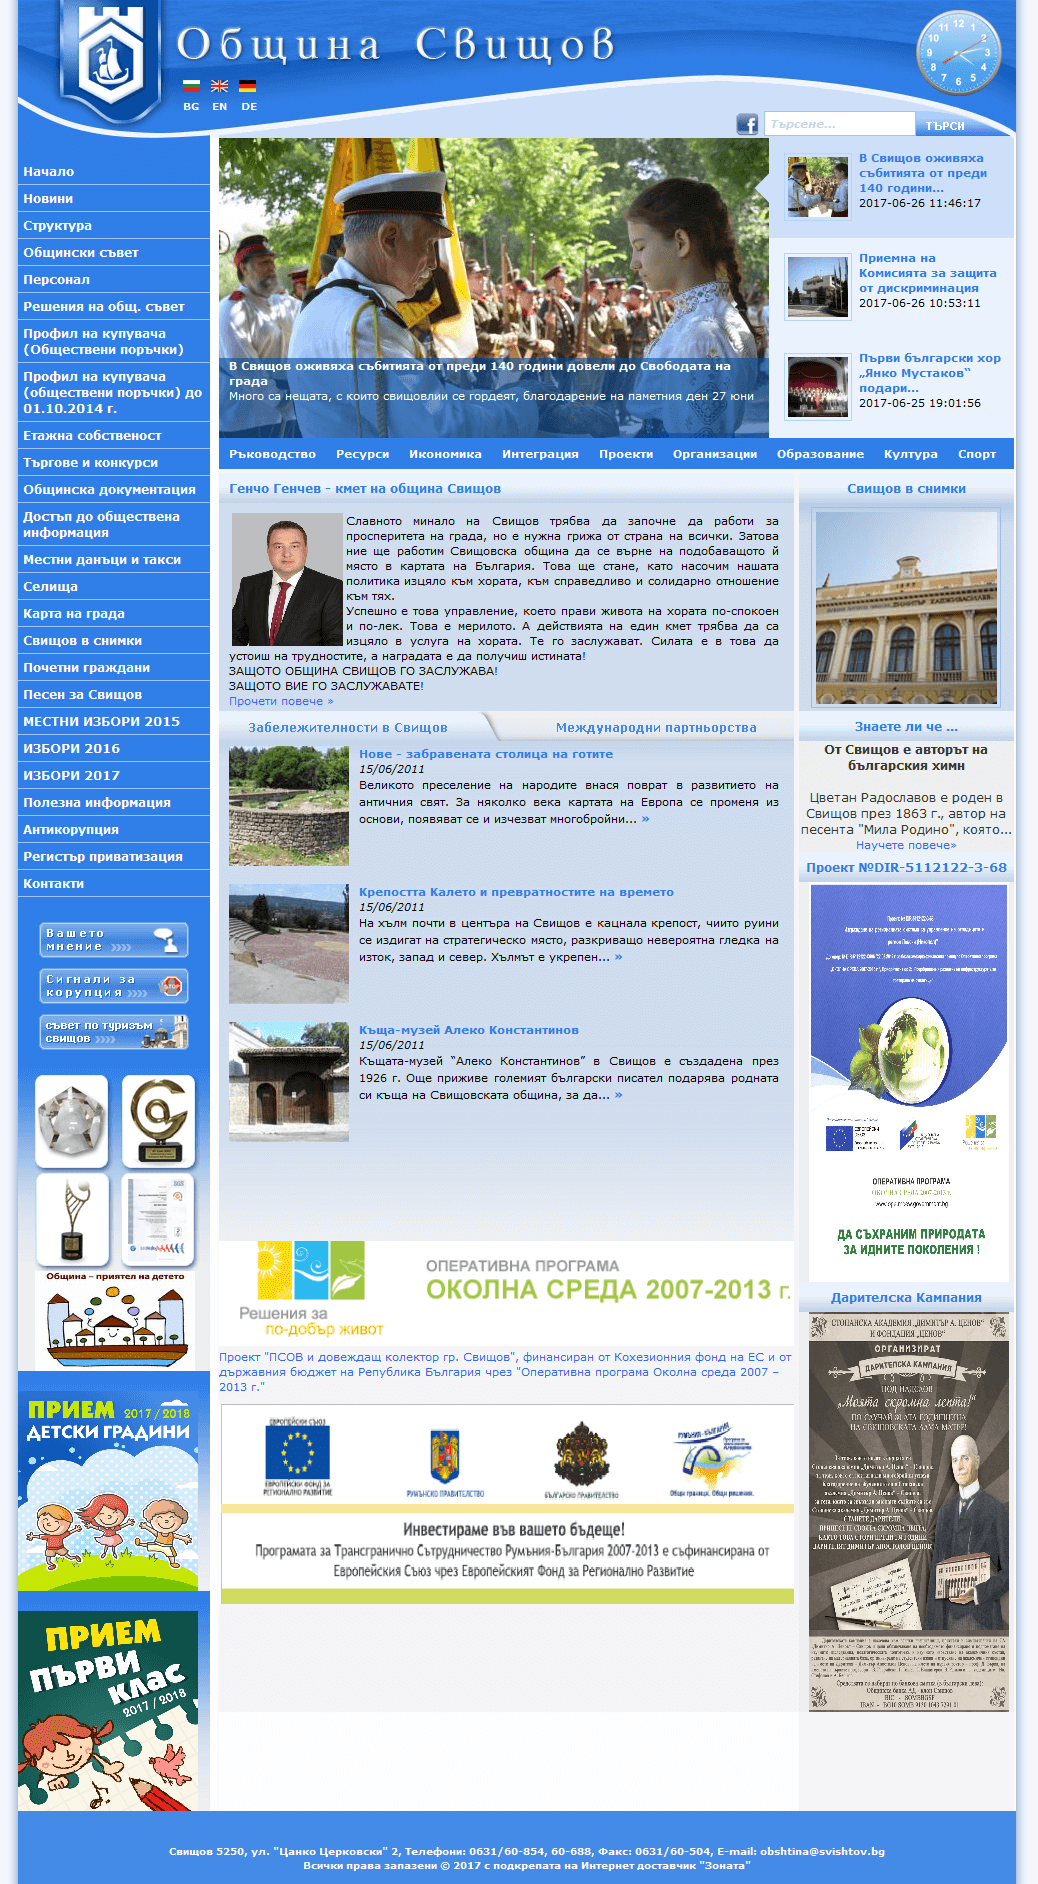 Website of munipalicity of Svishtov